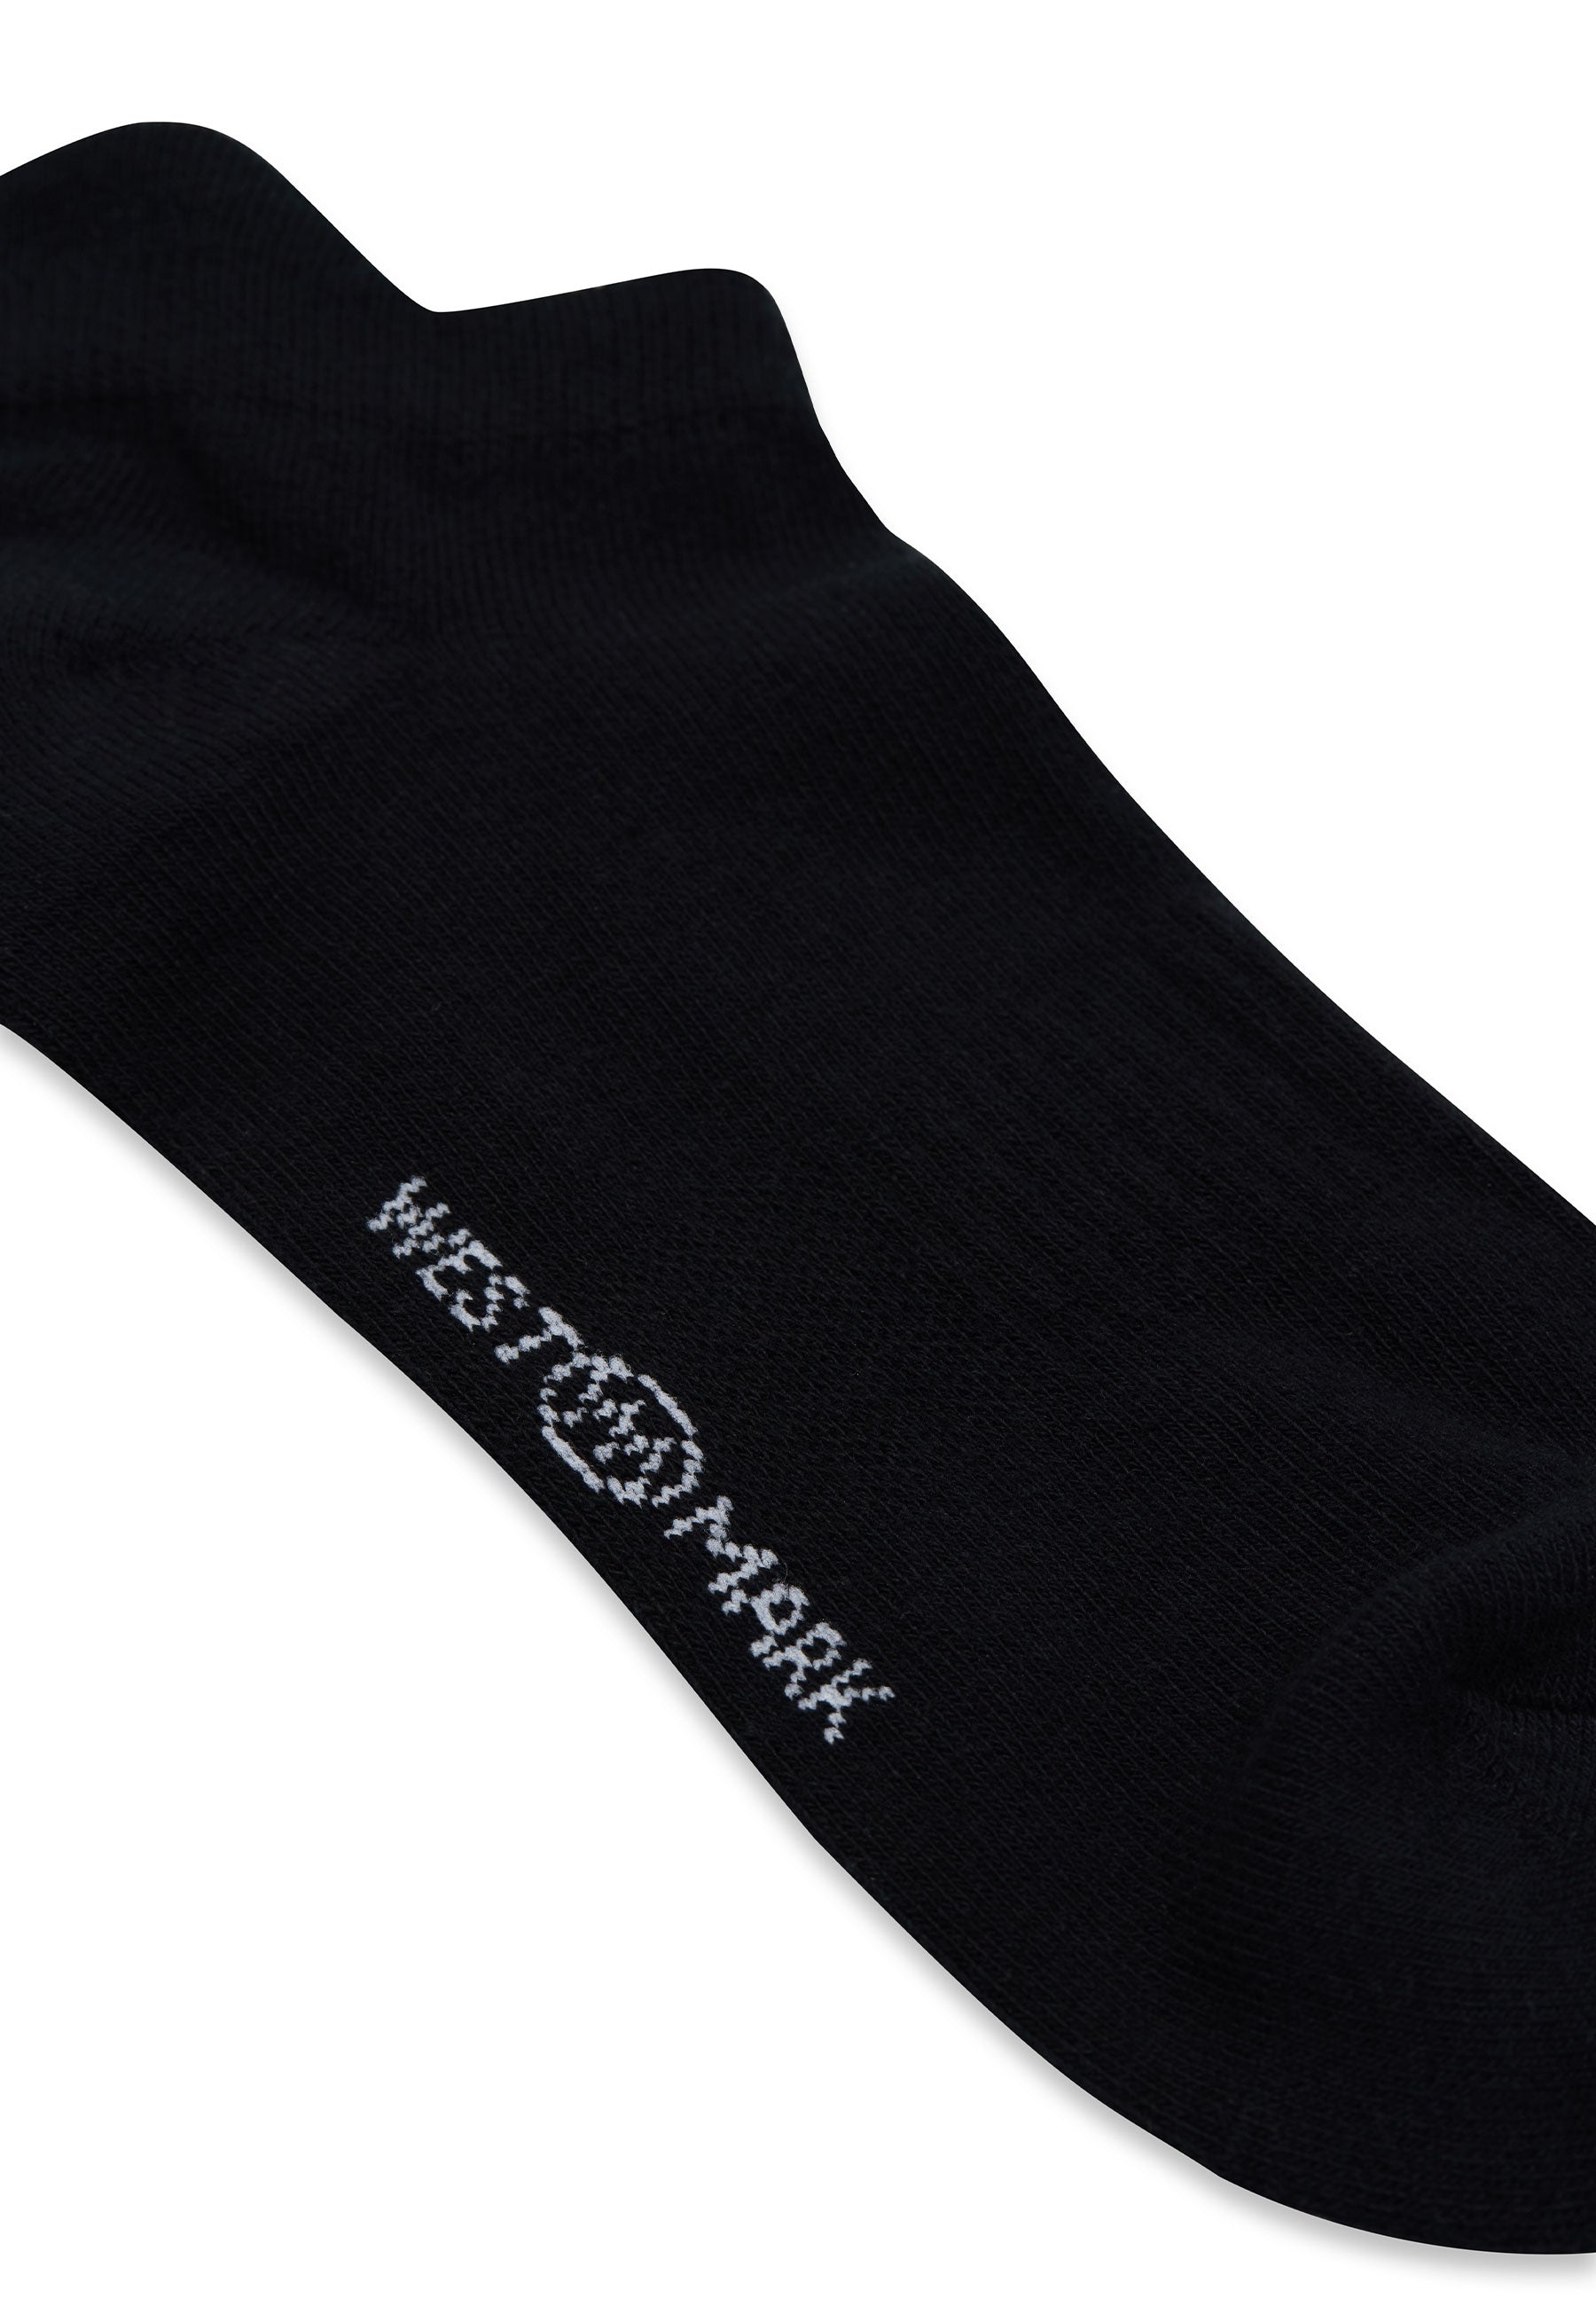 6’lı Siyah Pamuk Karışımlı Erkek Çorap Seti RUNNING - Socks - Westmark London EU(TR) Store Organik Pamuklu Sürdürülebilir Moda